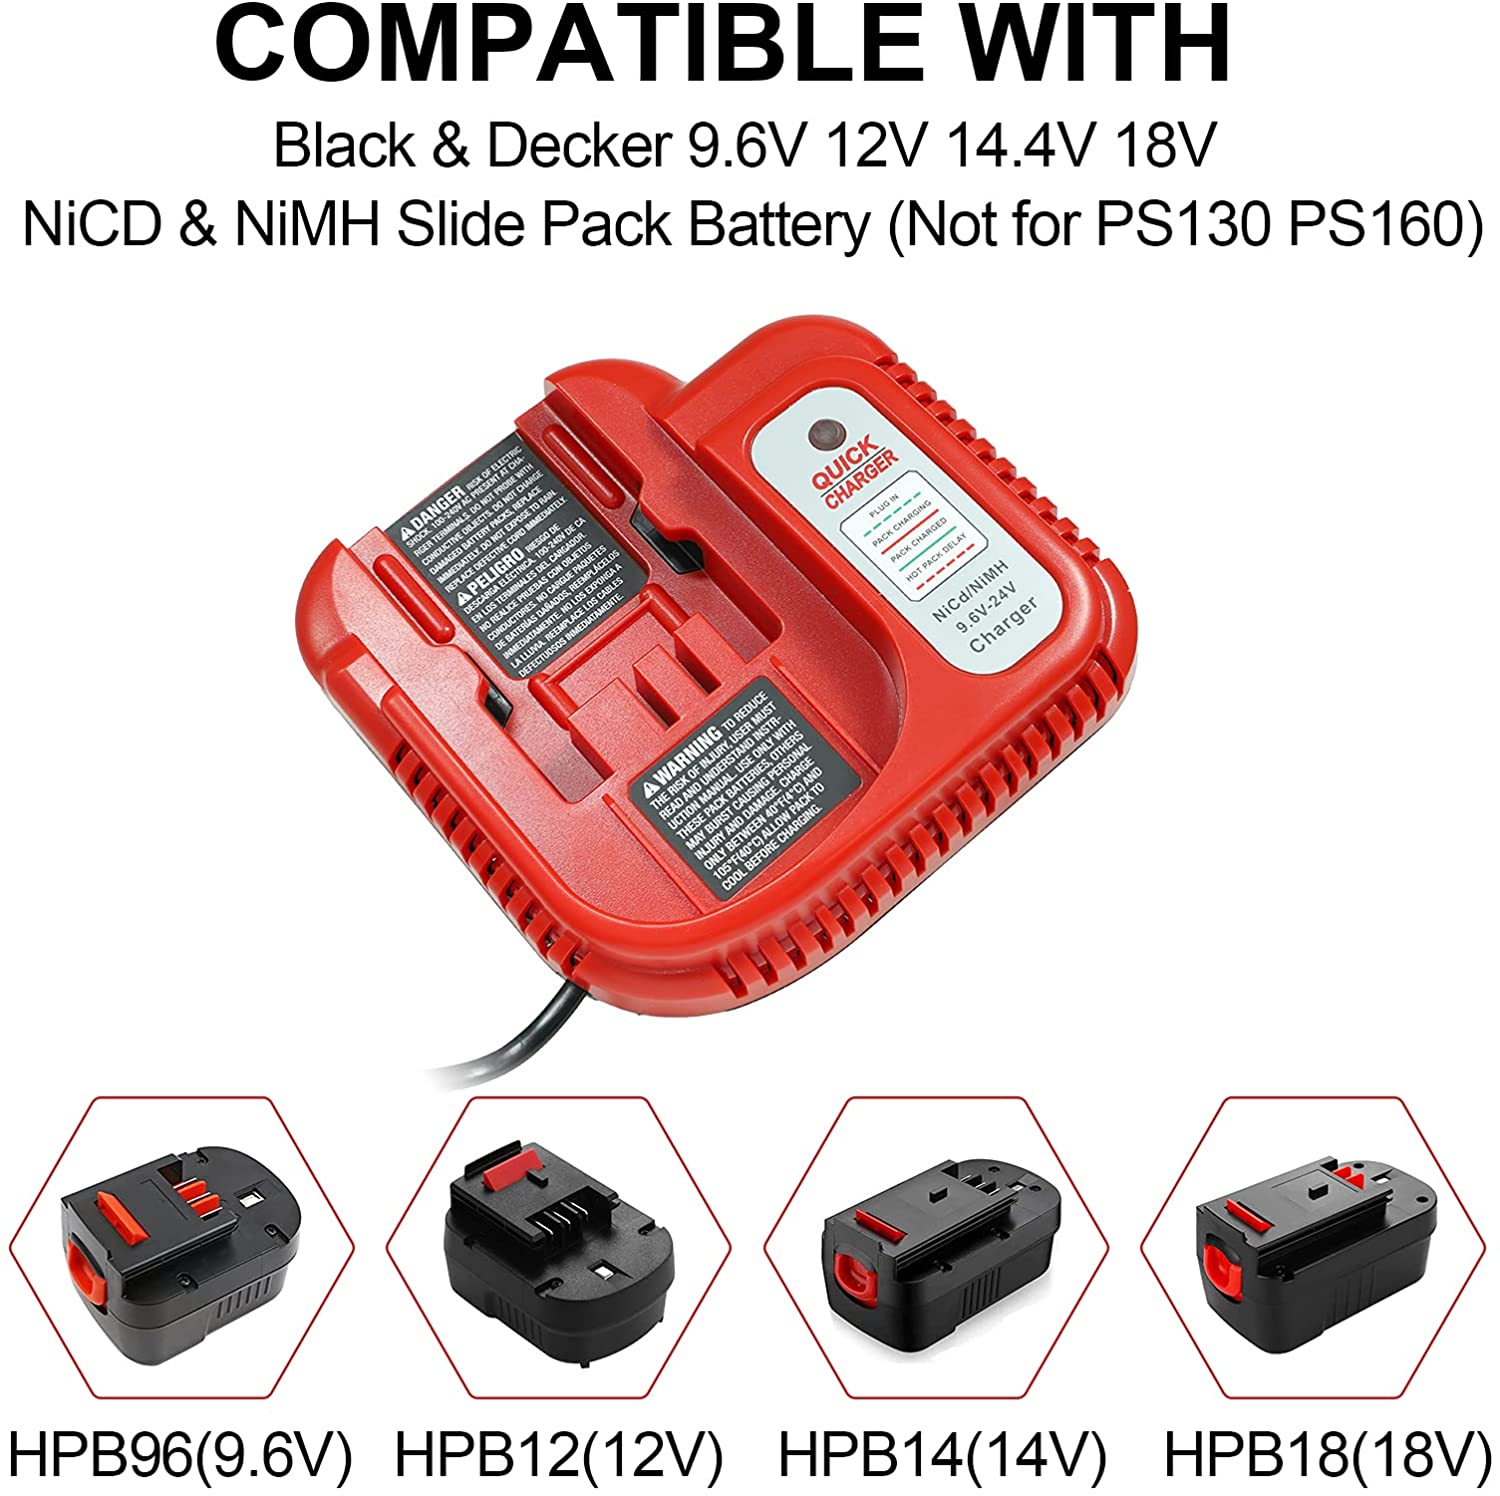 Black & Decker BDFC240 9.6V 24V Battery Charger- Red for sale